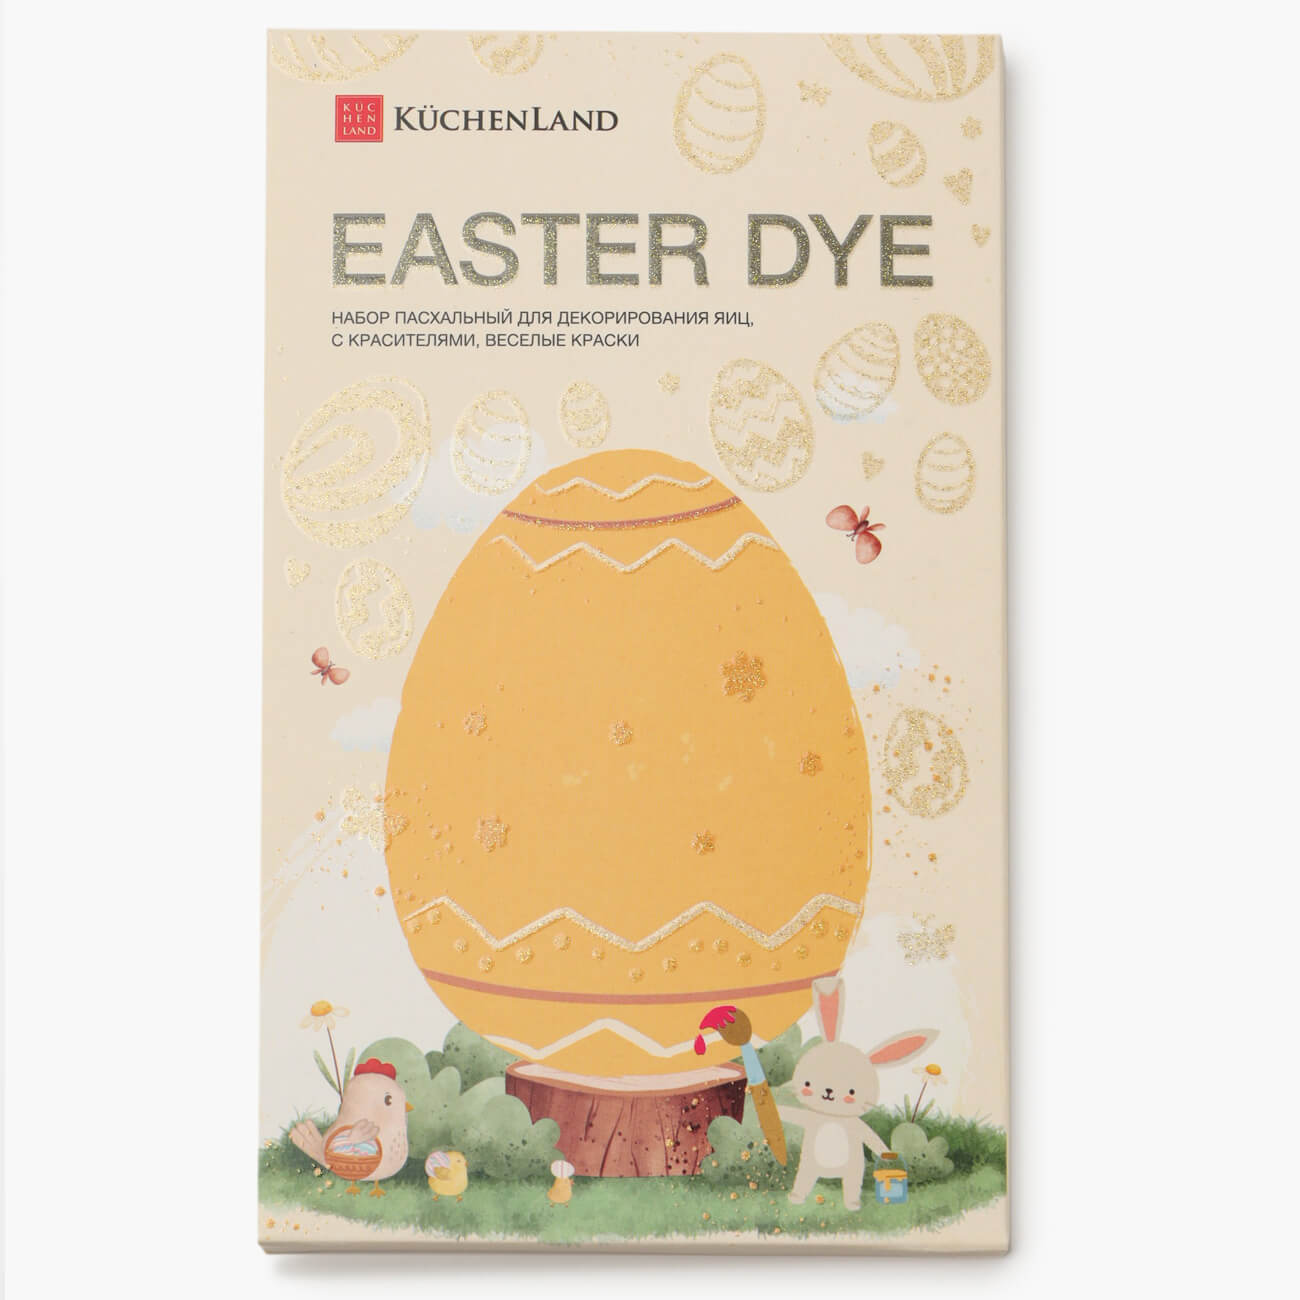 Набор пасхальный для декорирования яиц, 7 цветов/13 пр, Веселые краски, Easter dye малышарики лабиринты веселые прогулки